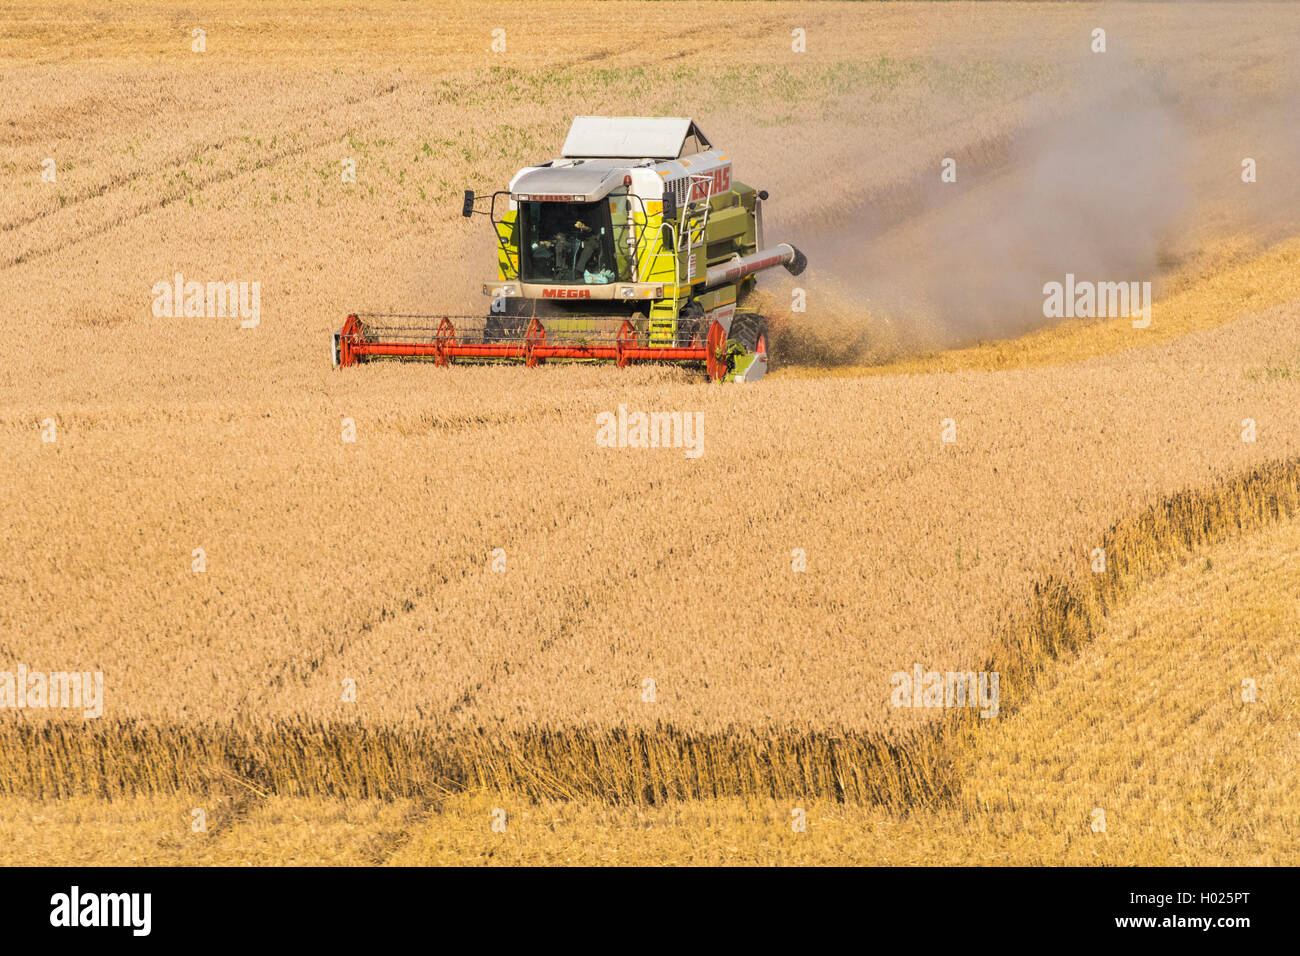 Le blé tendre, cultivé du blé (Triticum aestivum), champ de blé, la récolte avec une moissonneuse, Allemagne, Bavière, Isental Banque D'Images